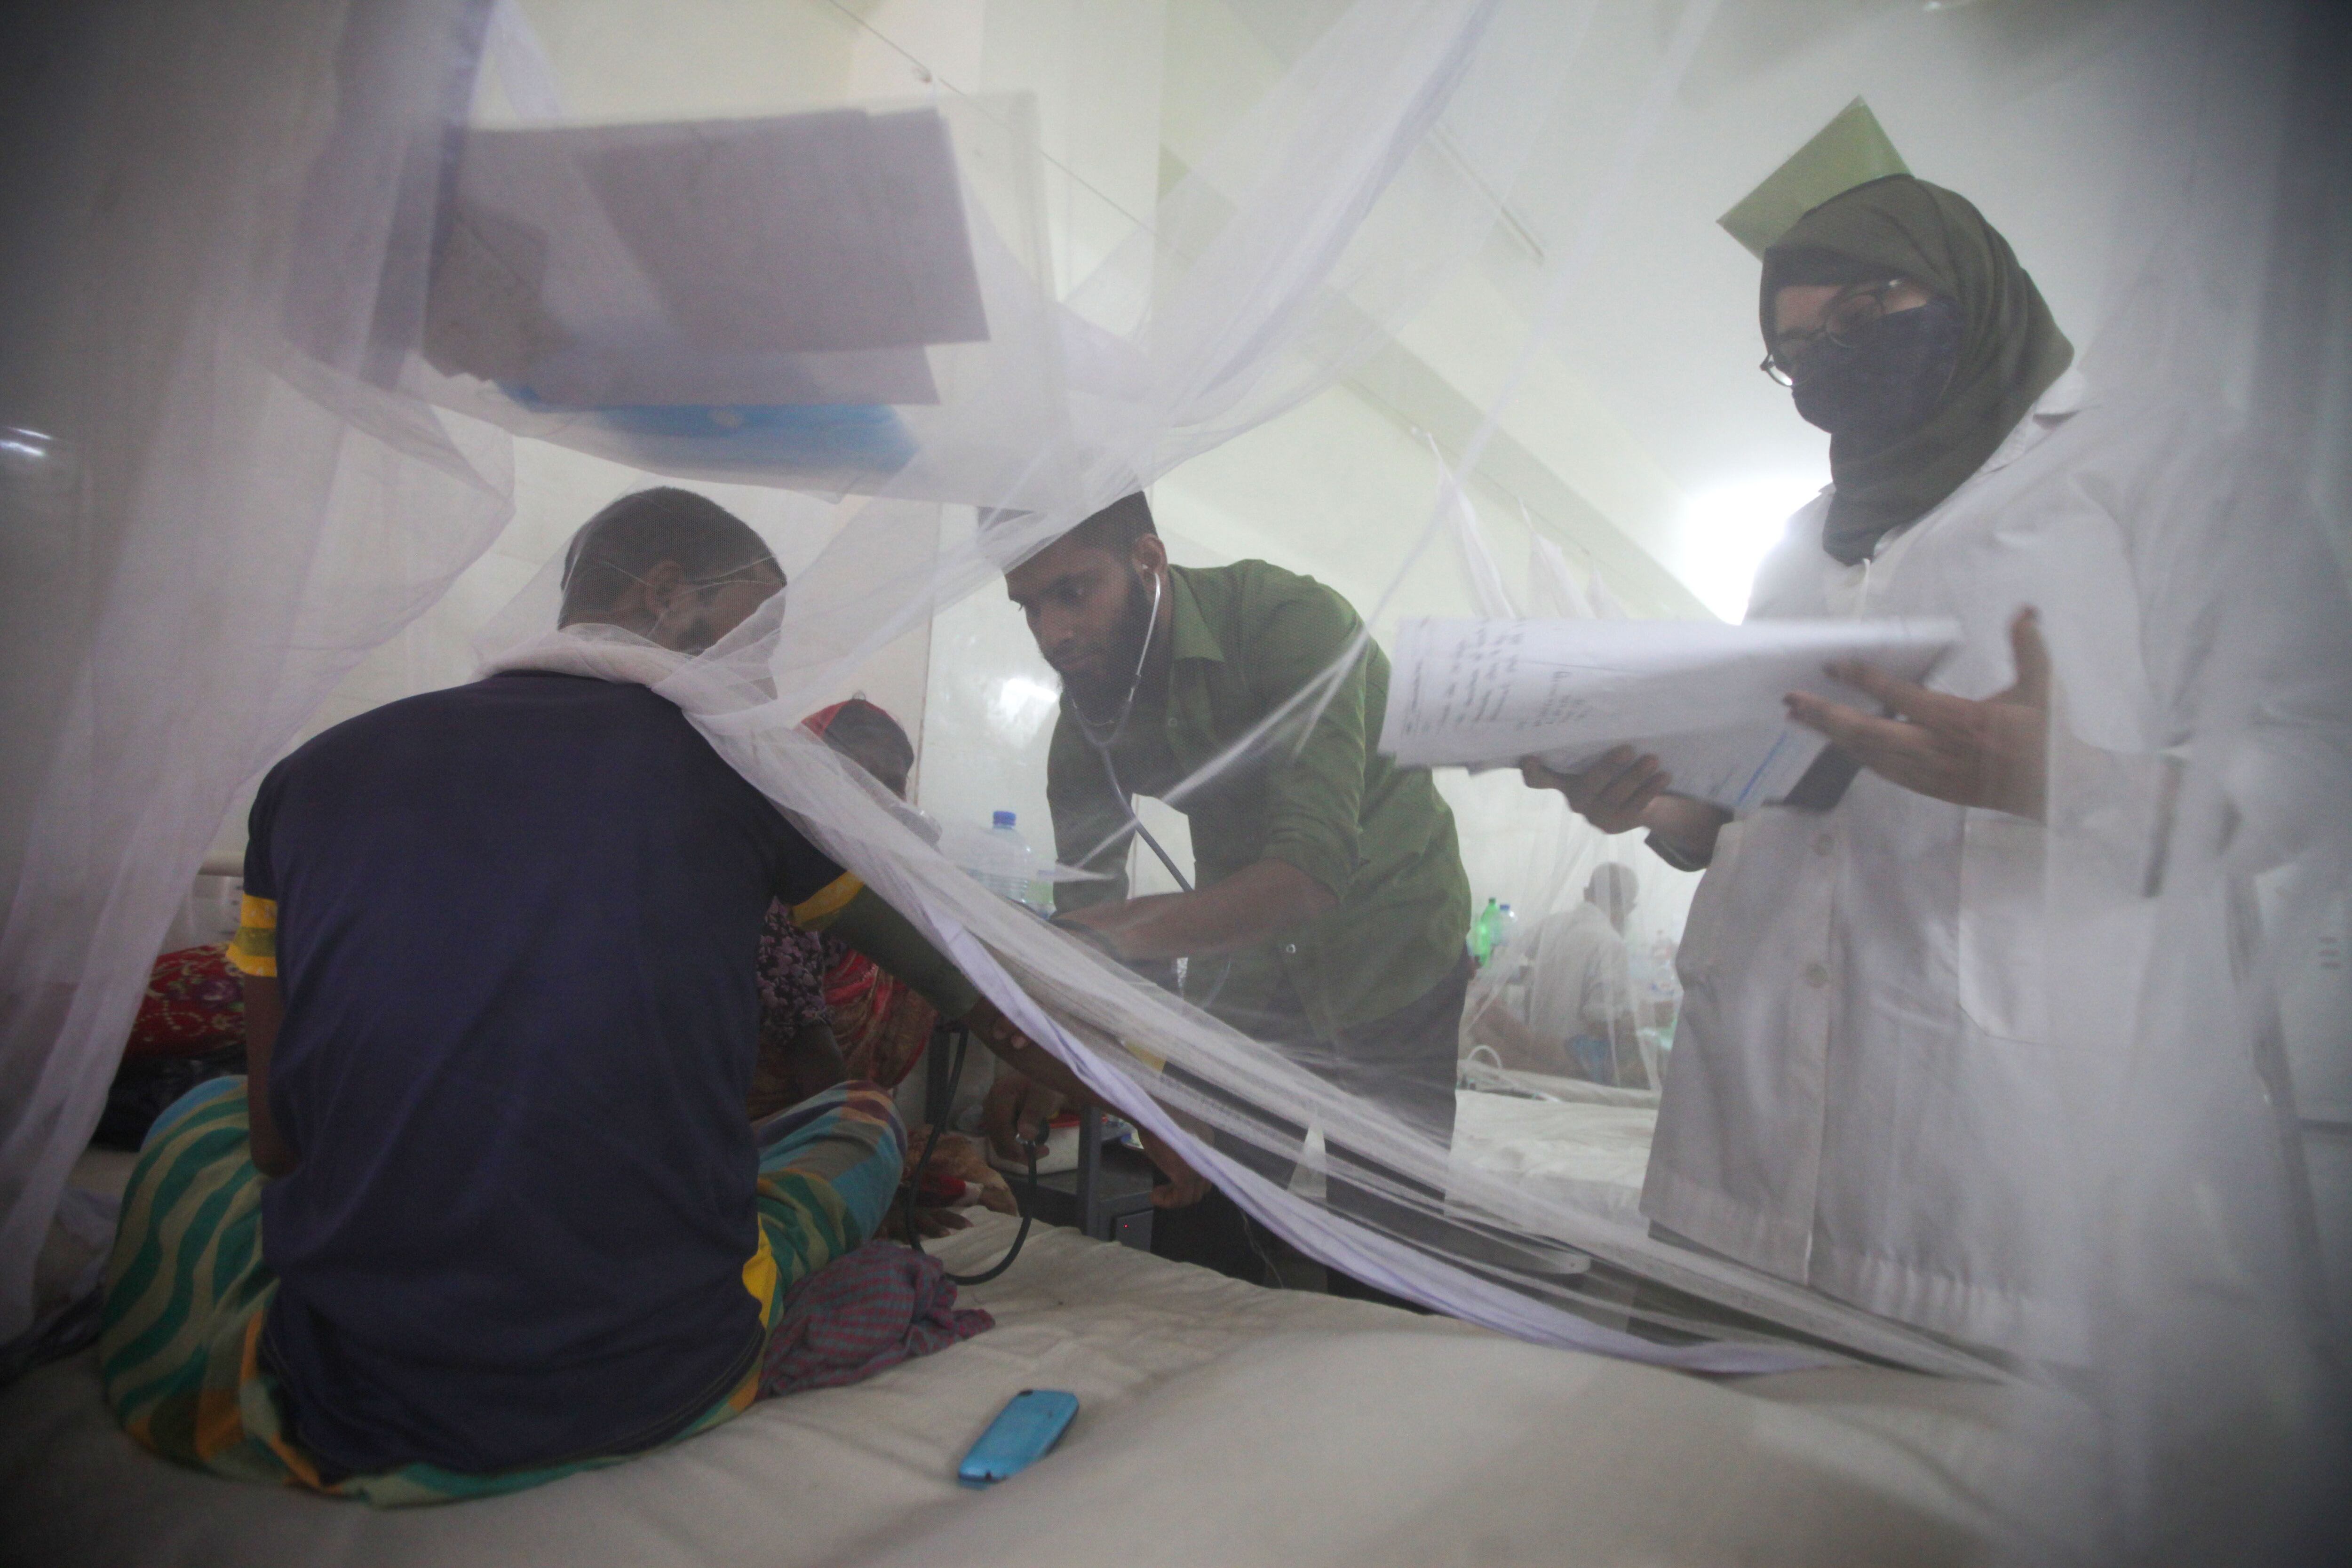 El brote de dengue en Bangladesh ha dado un giro preocupante a medida que el número de casos y muertes sigue aumentando, lo que indica una tendencia alarmante este año. Europa Press/Contacto/Abu Sufian Jewel
